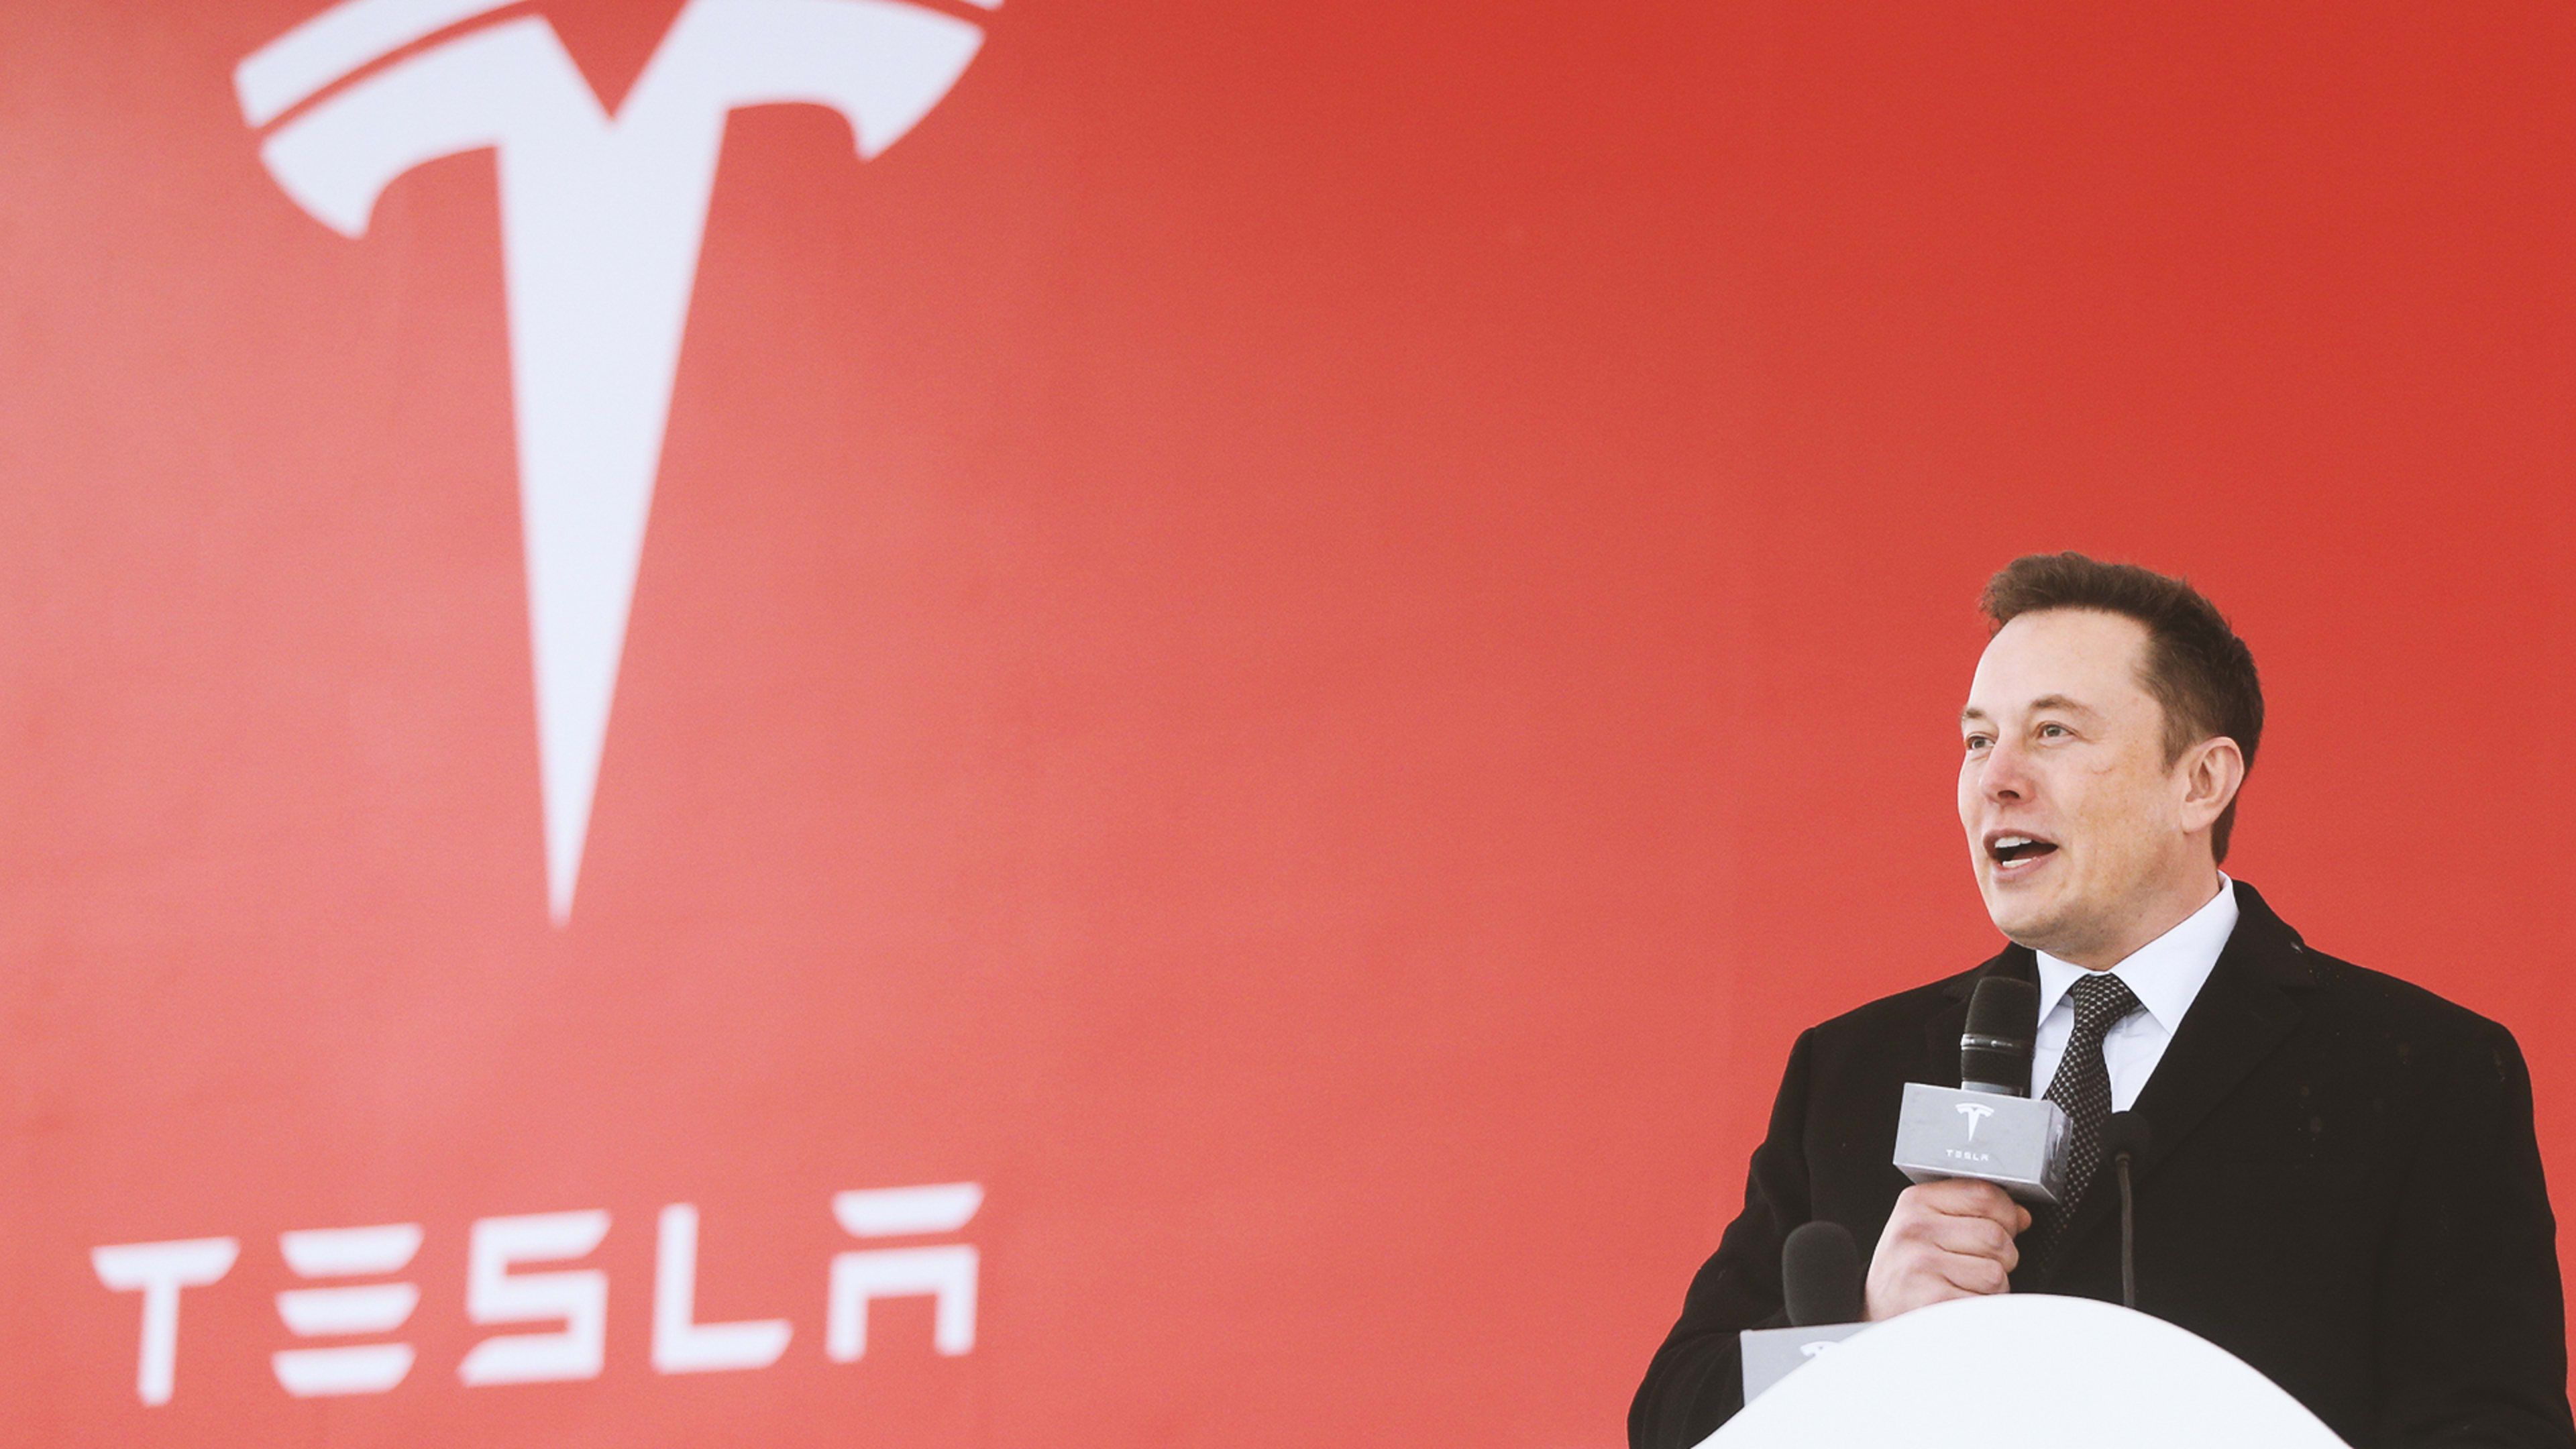 Tesla’s long-awaited $35,000 Model 3 is here